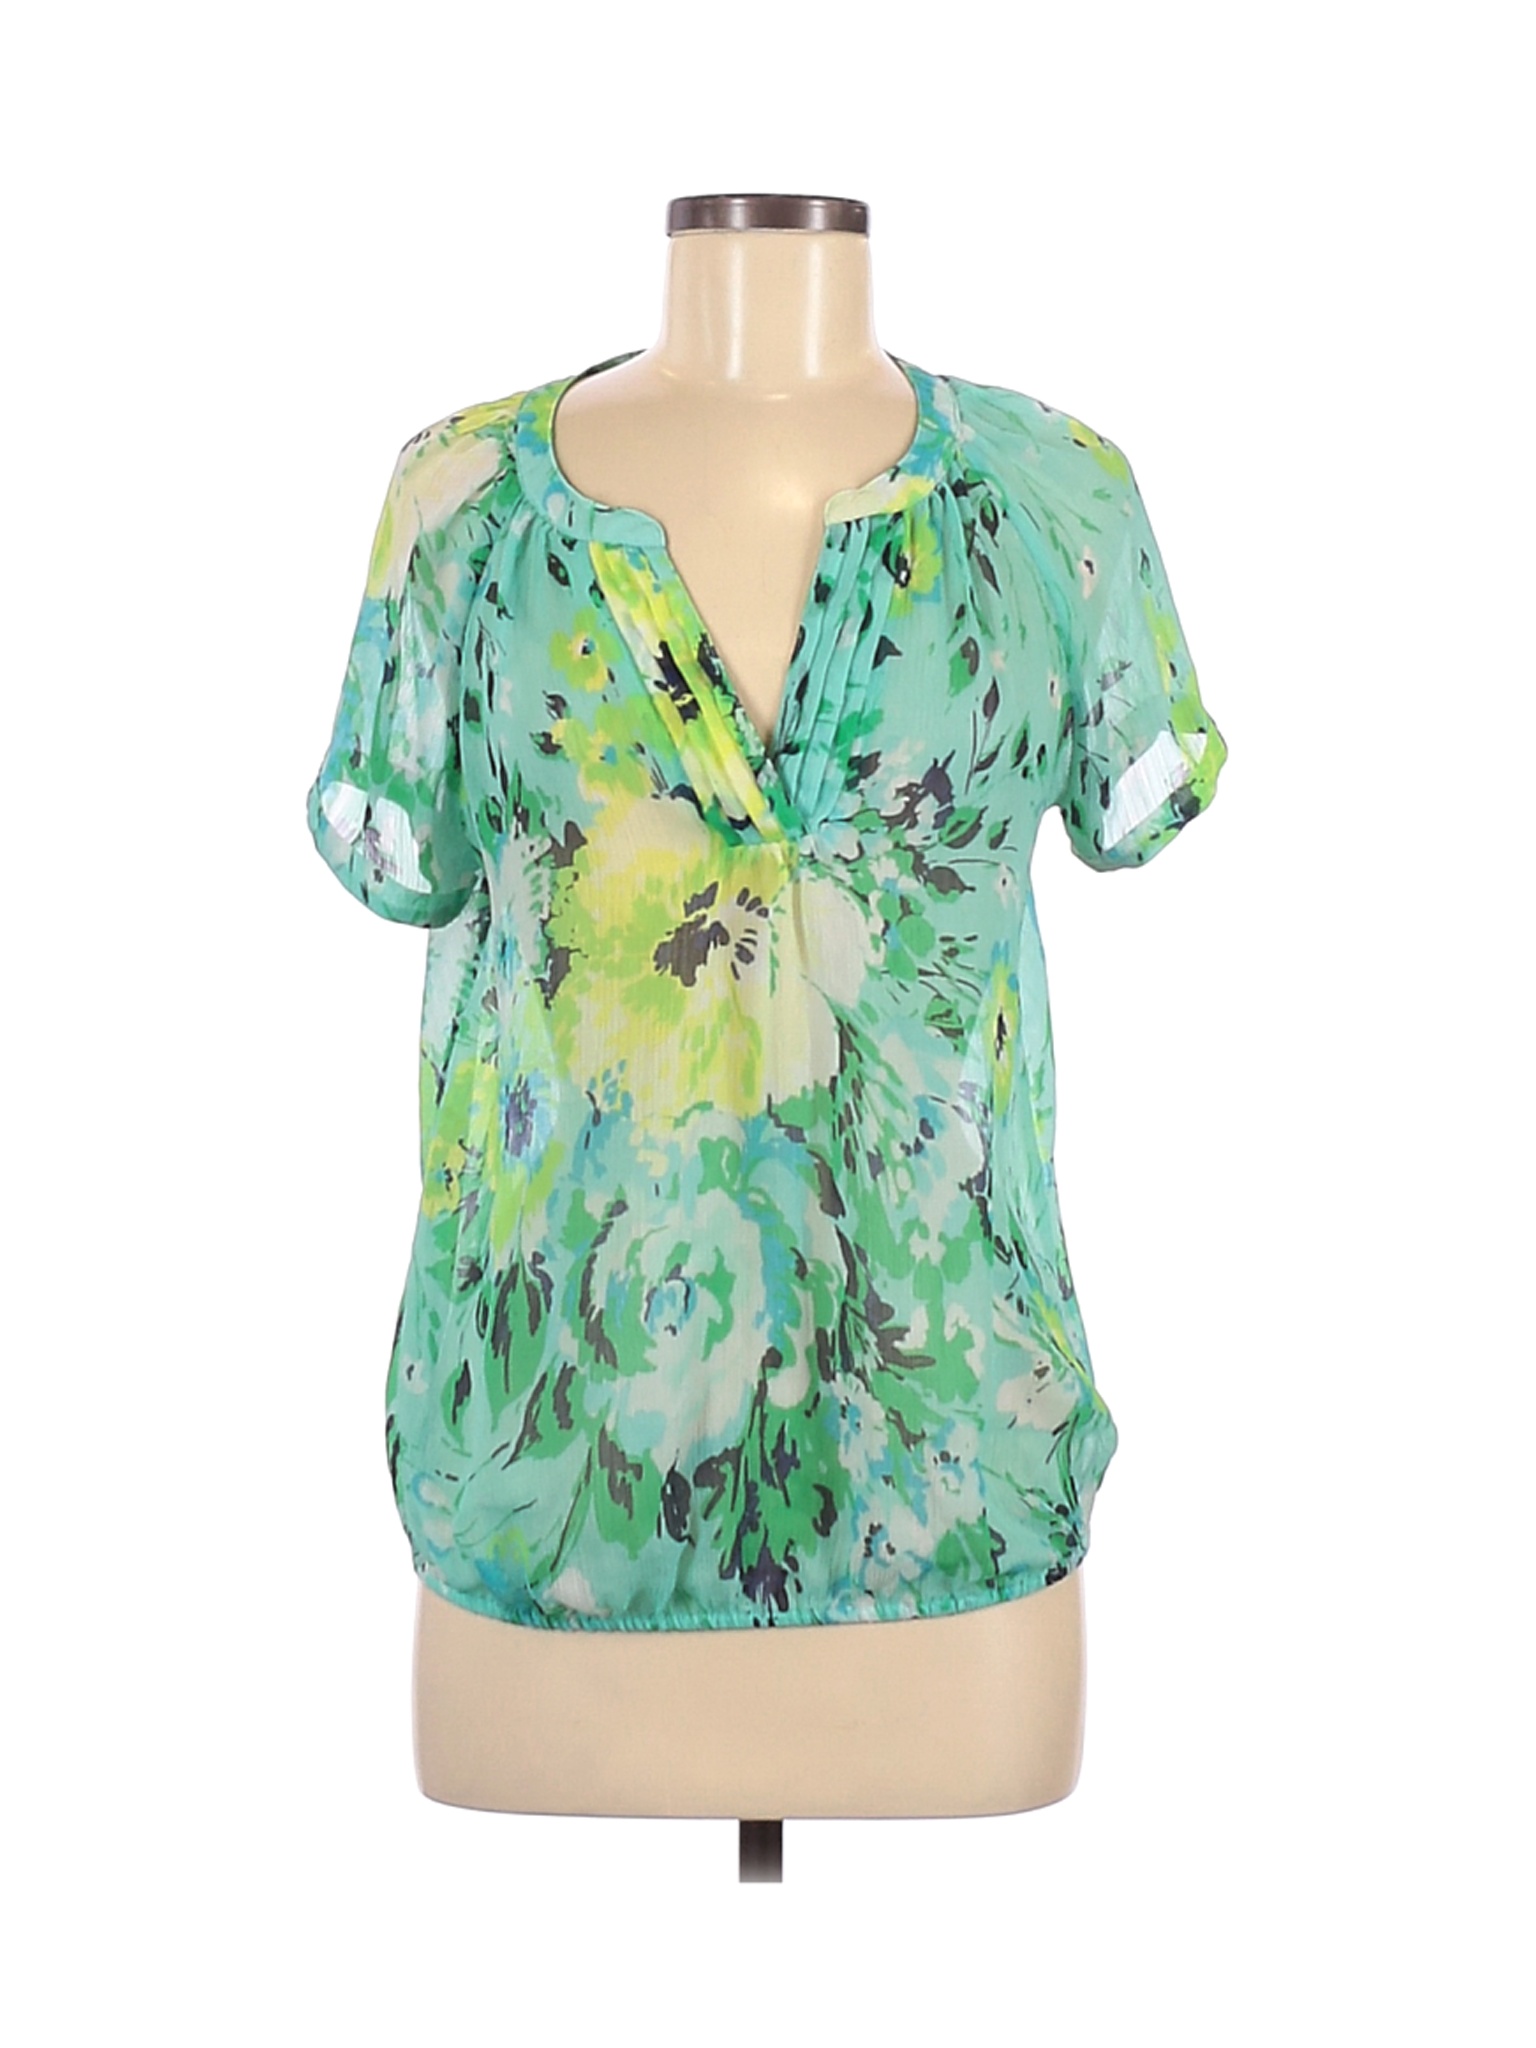 St. John's Bay Women Green Short Sleeve Blouse M | eBay